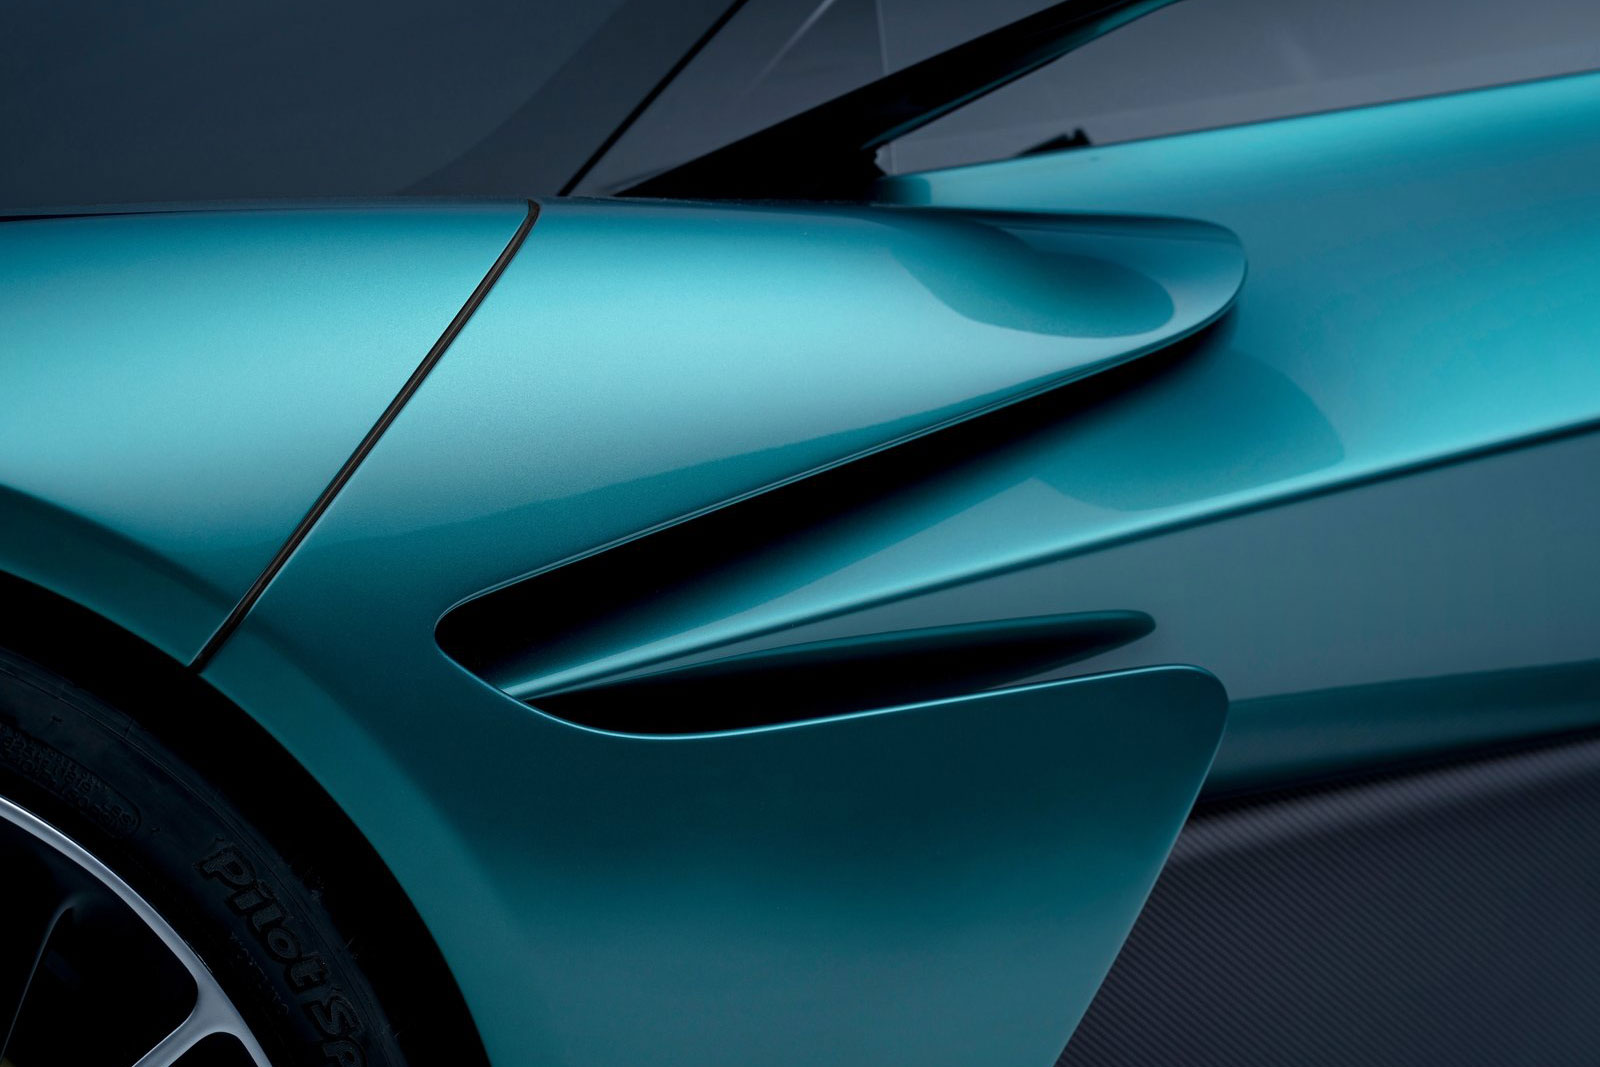 Bilder: Aston Martin Valhalla 2021